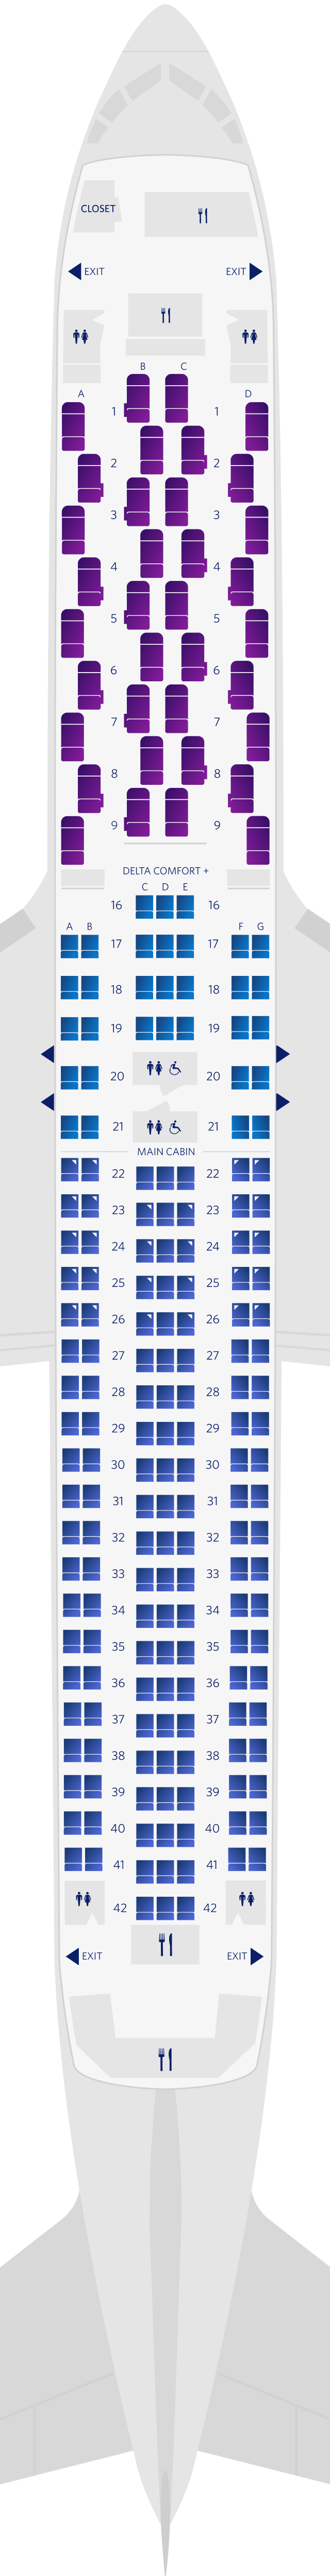 Boeing 767-300ER (76L) Seat Map